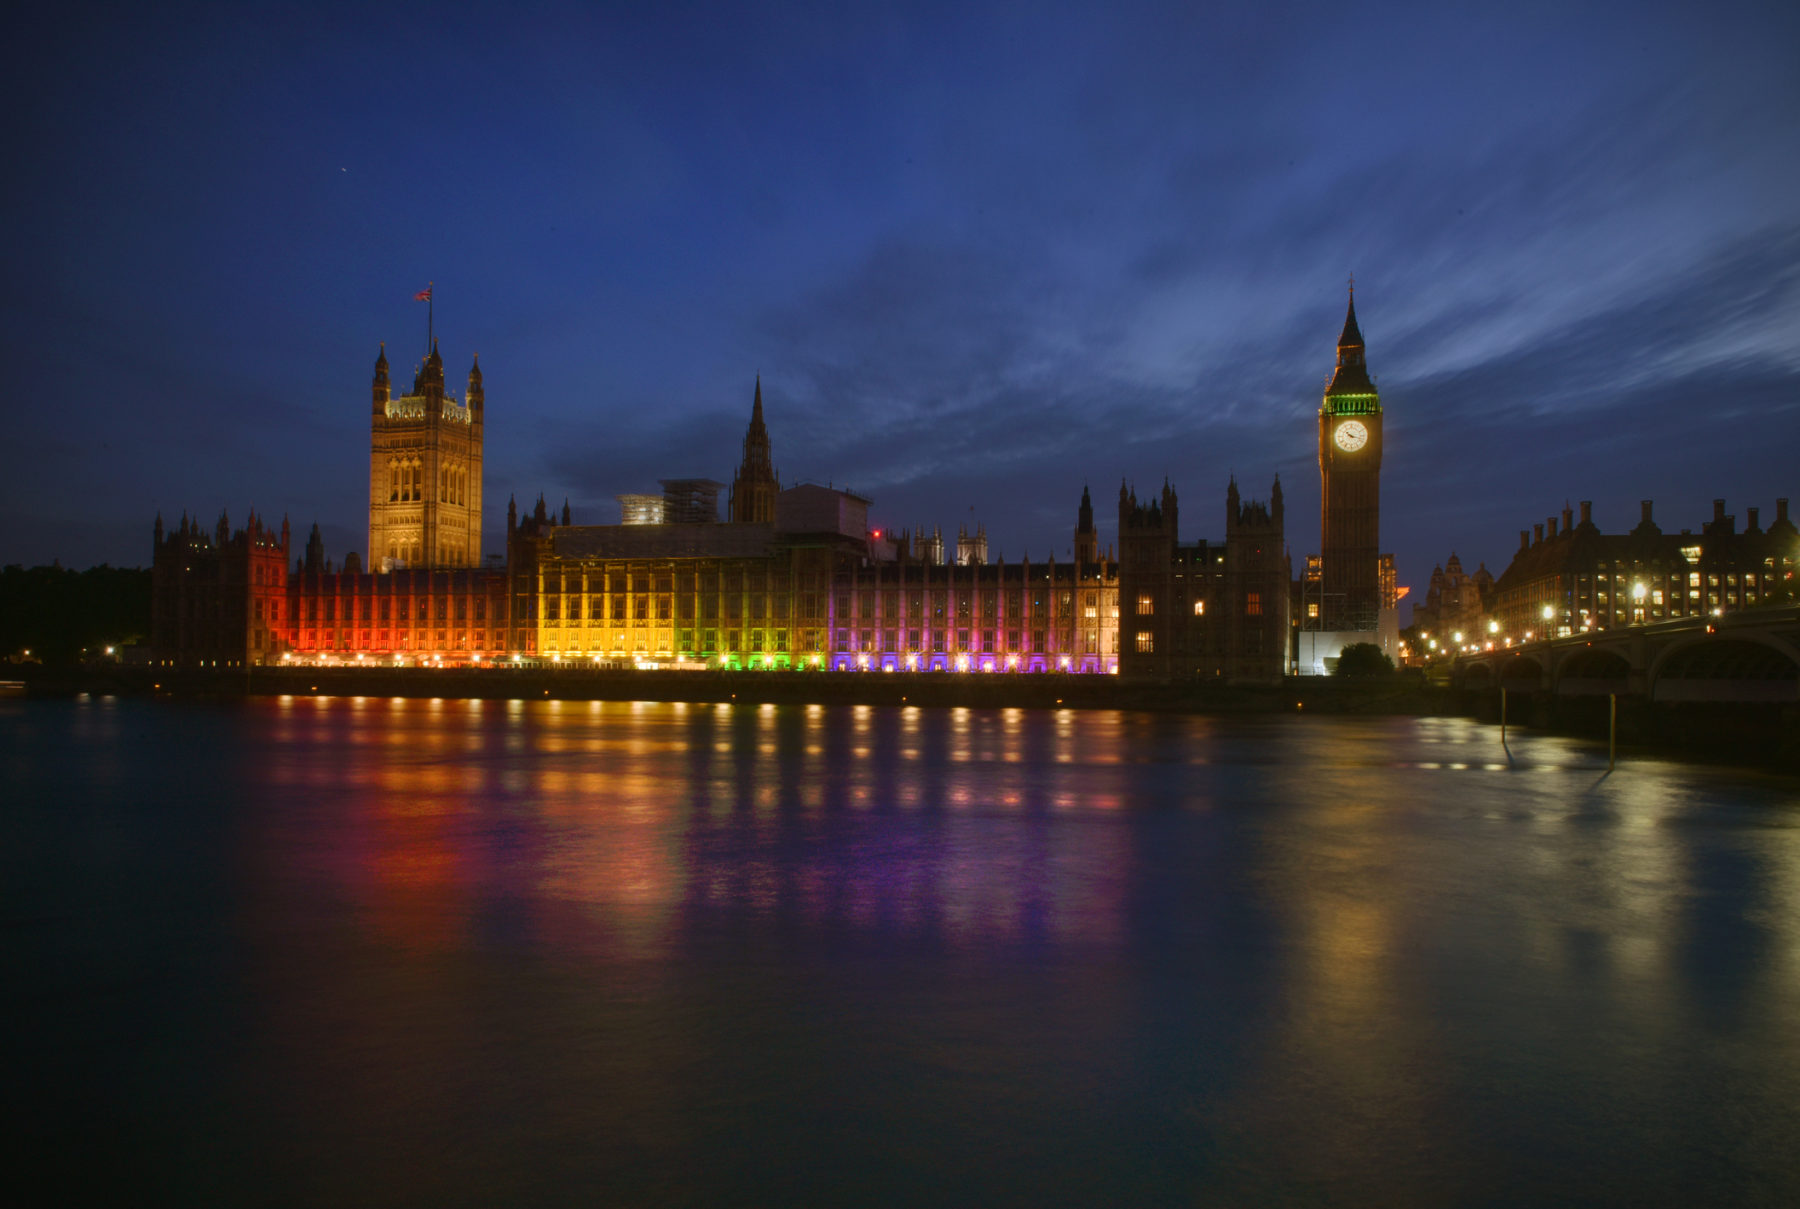 Photo du Parlement du Royaume-Uni à Londres, depuis la Tamise. Il fait nuit et les bâtiments sont illuminés.